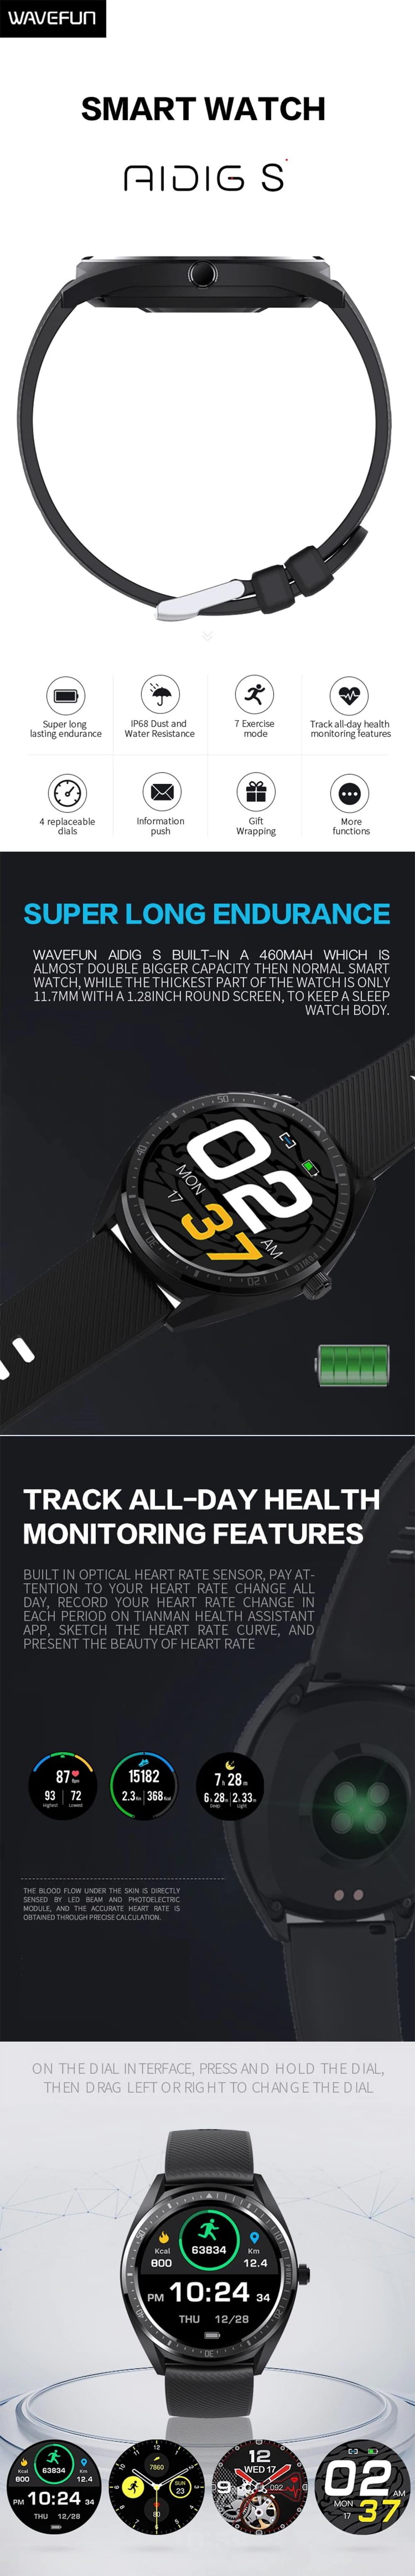 Wavefun Aidig S Smart Watch 5